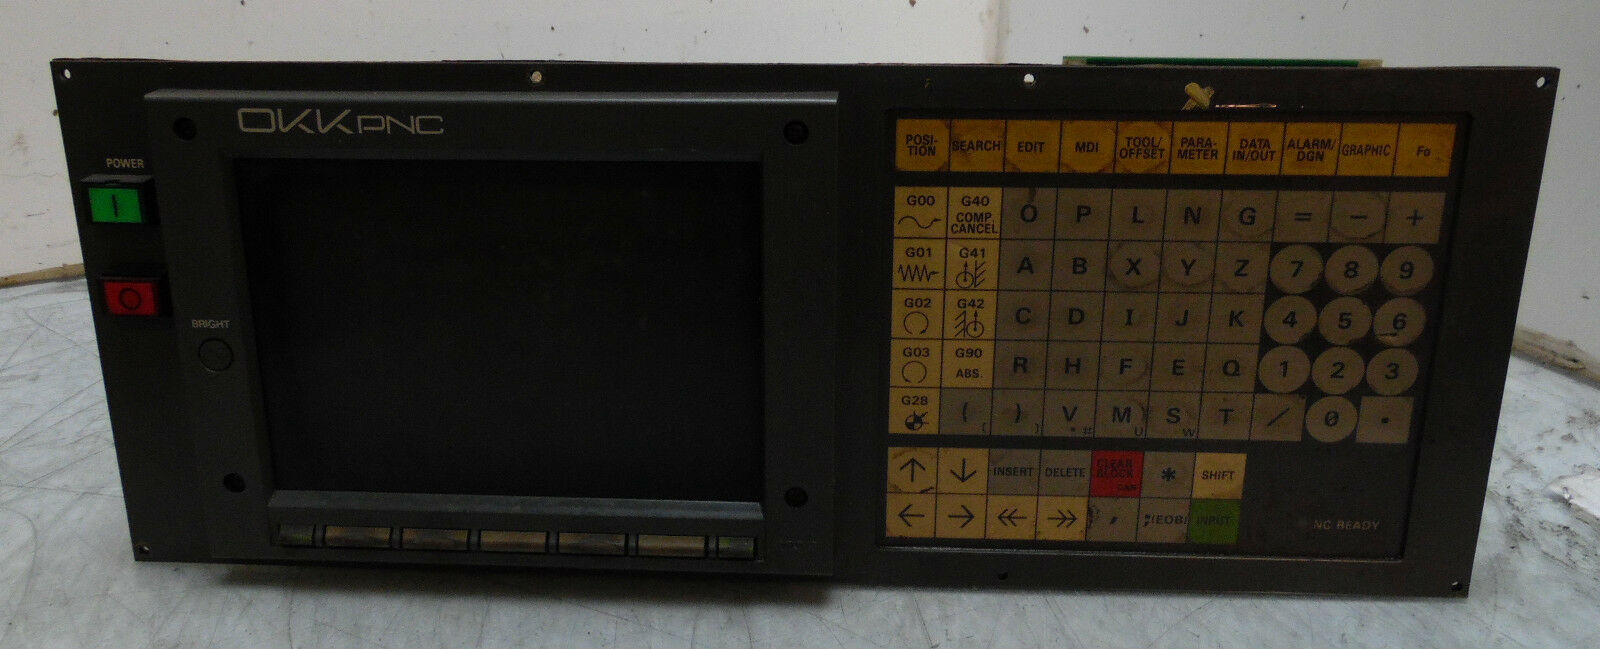 Mitsubishi Betrieb Board, Unit # Ok901b-2, W/Bn624a810g51,三菱 